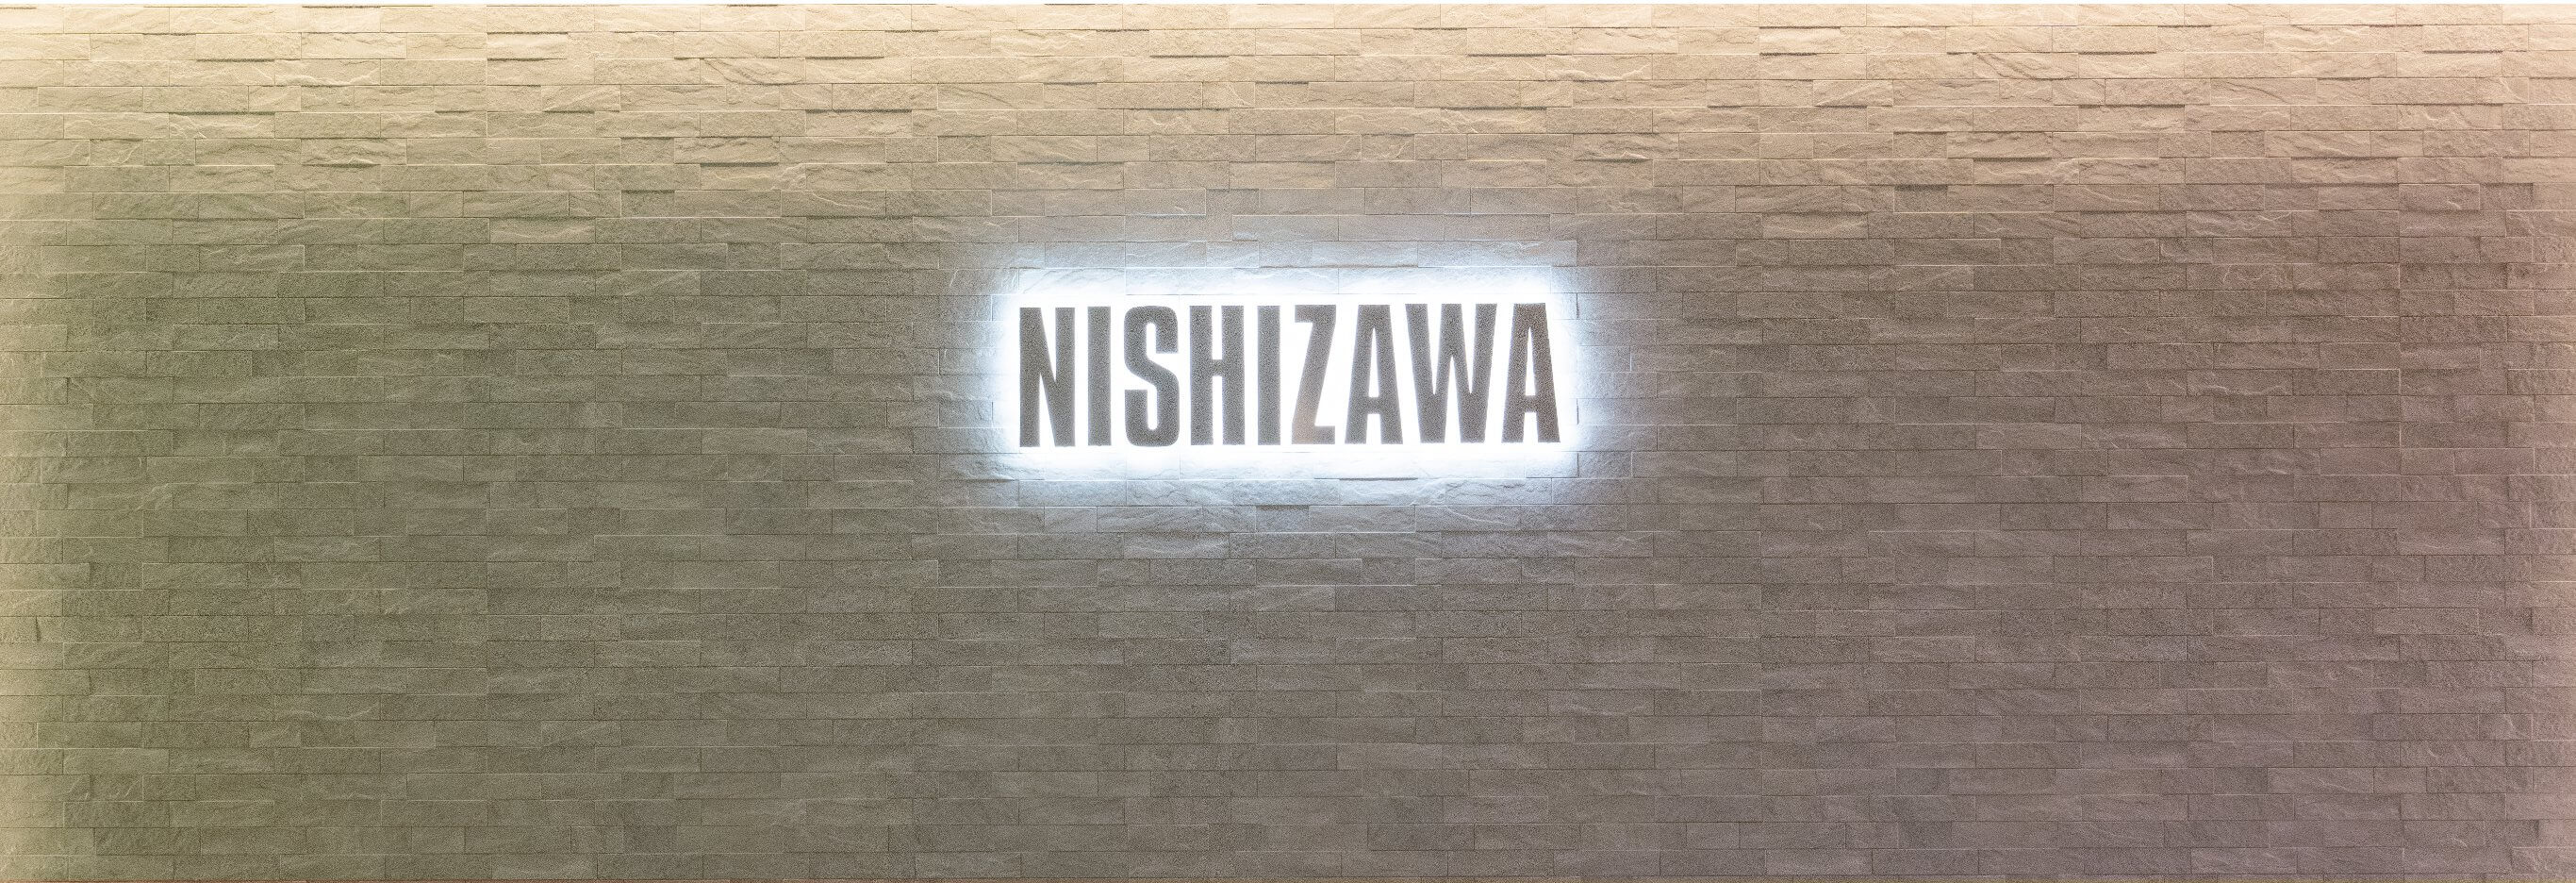 NISHIZAWA